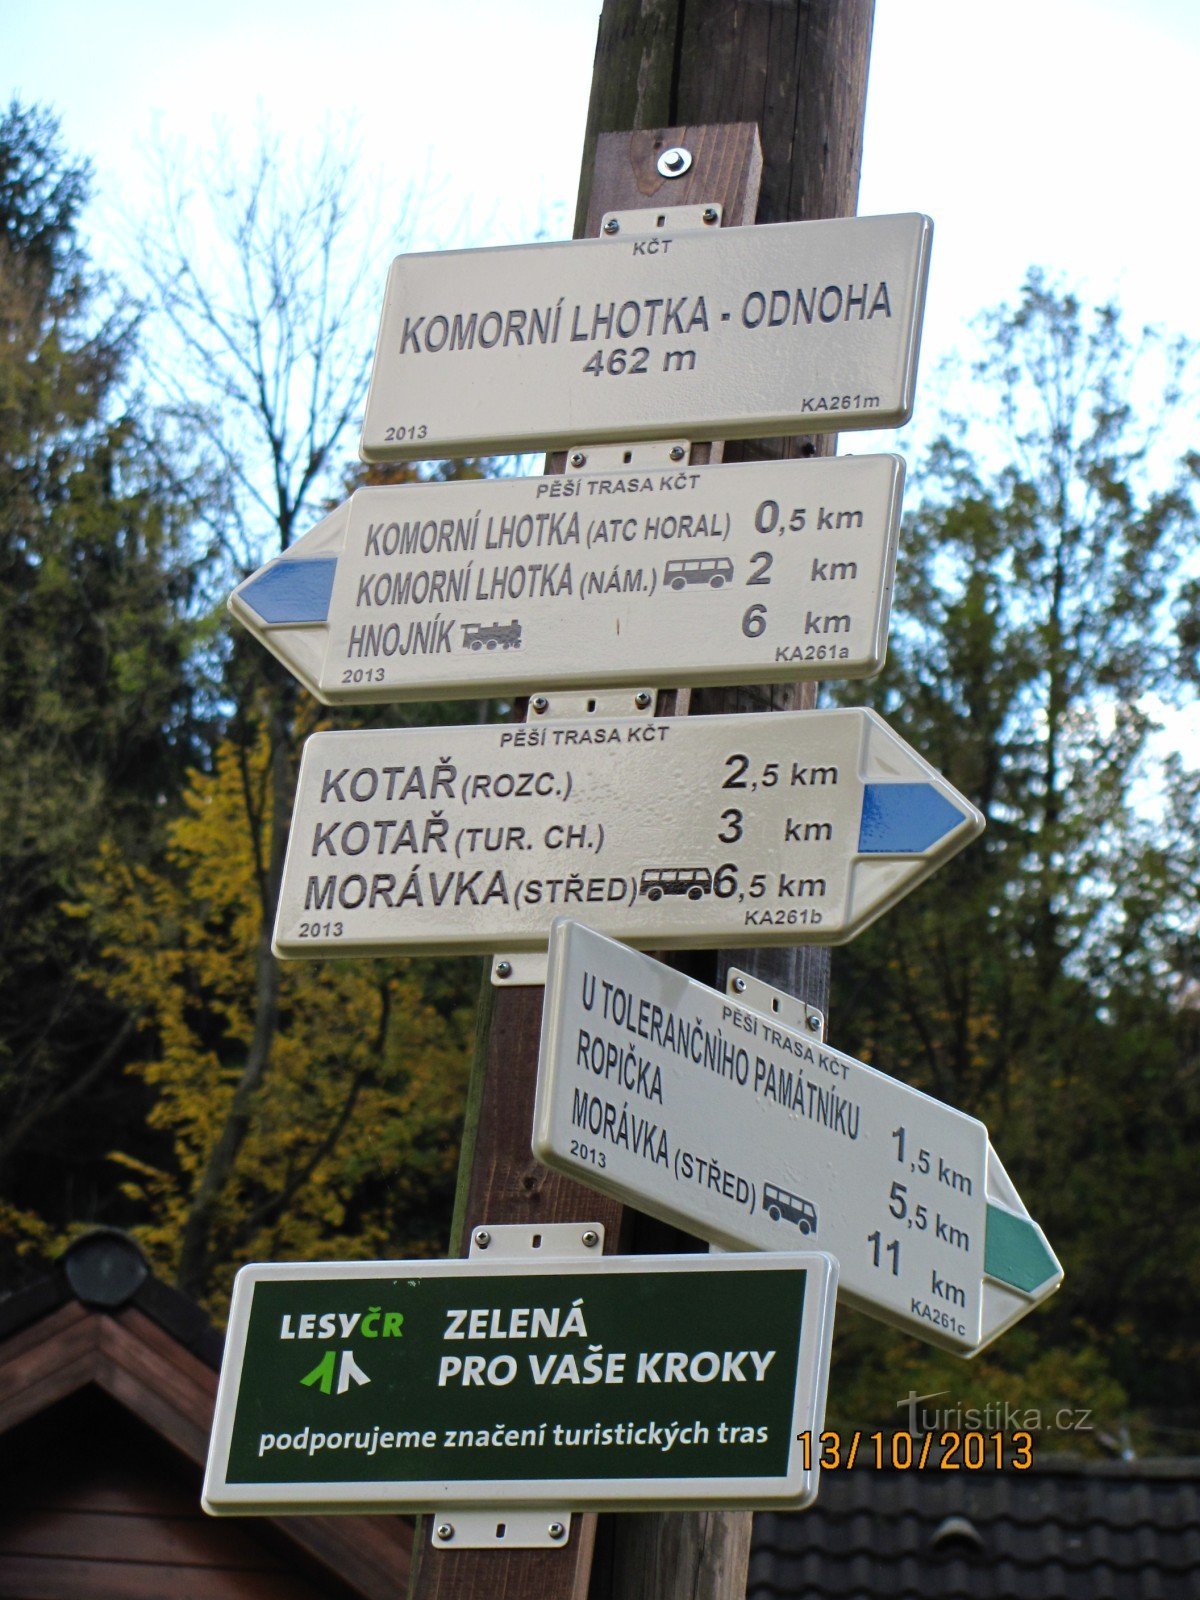 Van Komorní Lhotka naar Kotař en verder naar Ropička